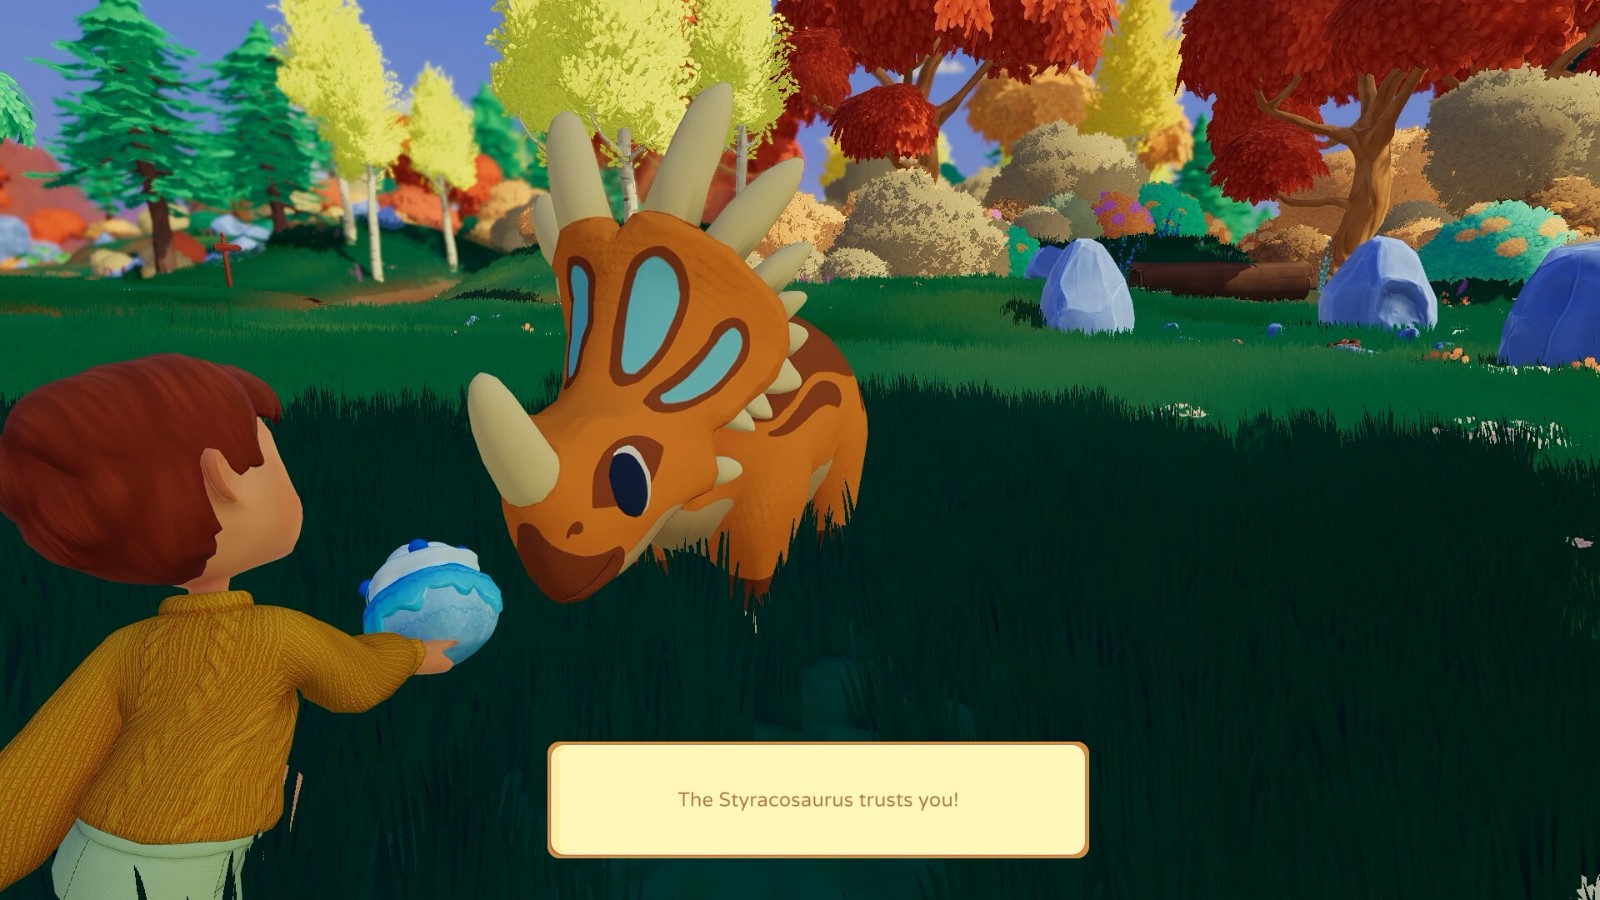 农场模拟游戏《Paleo Pines》今秋发售 登陆全平台 二次世界 第6张